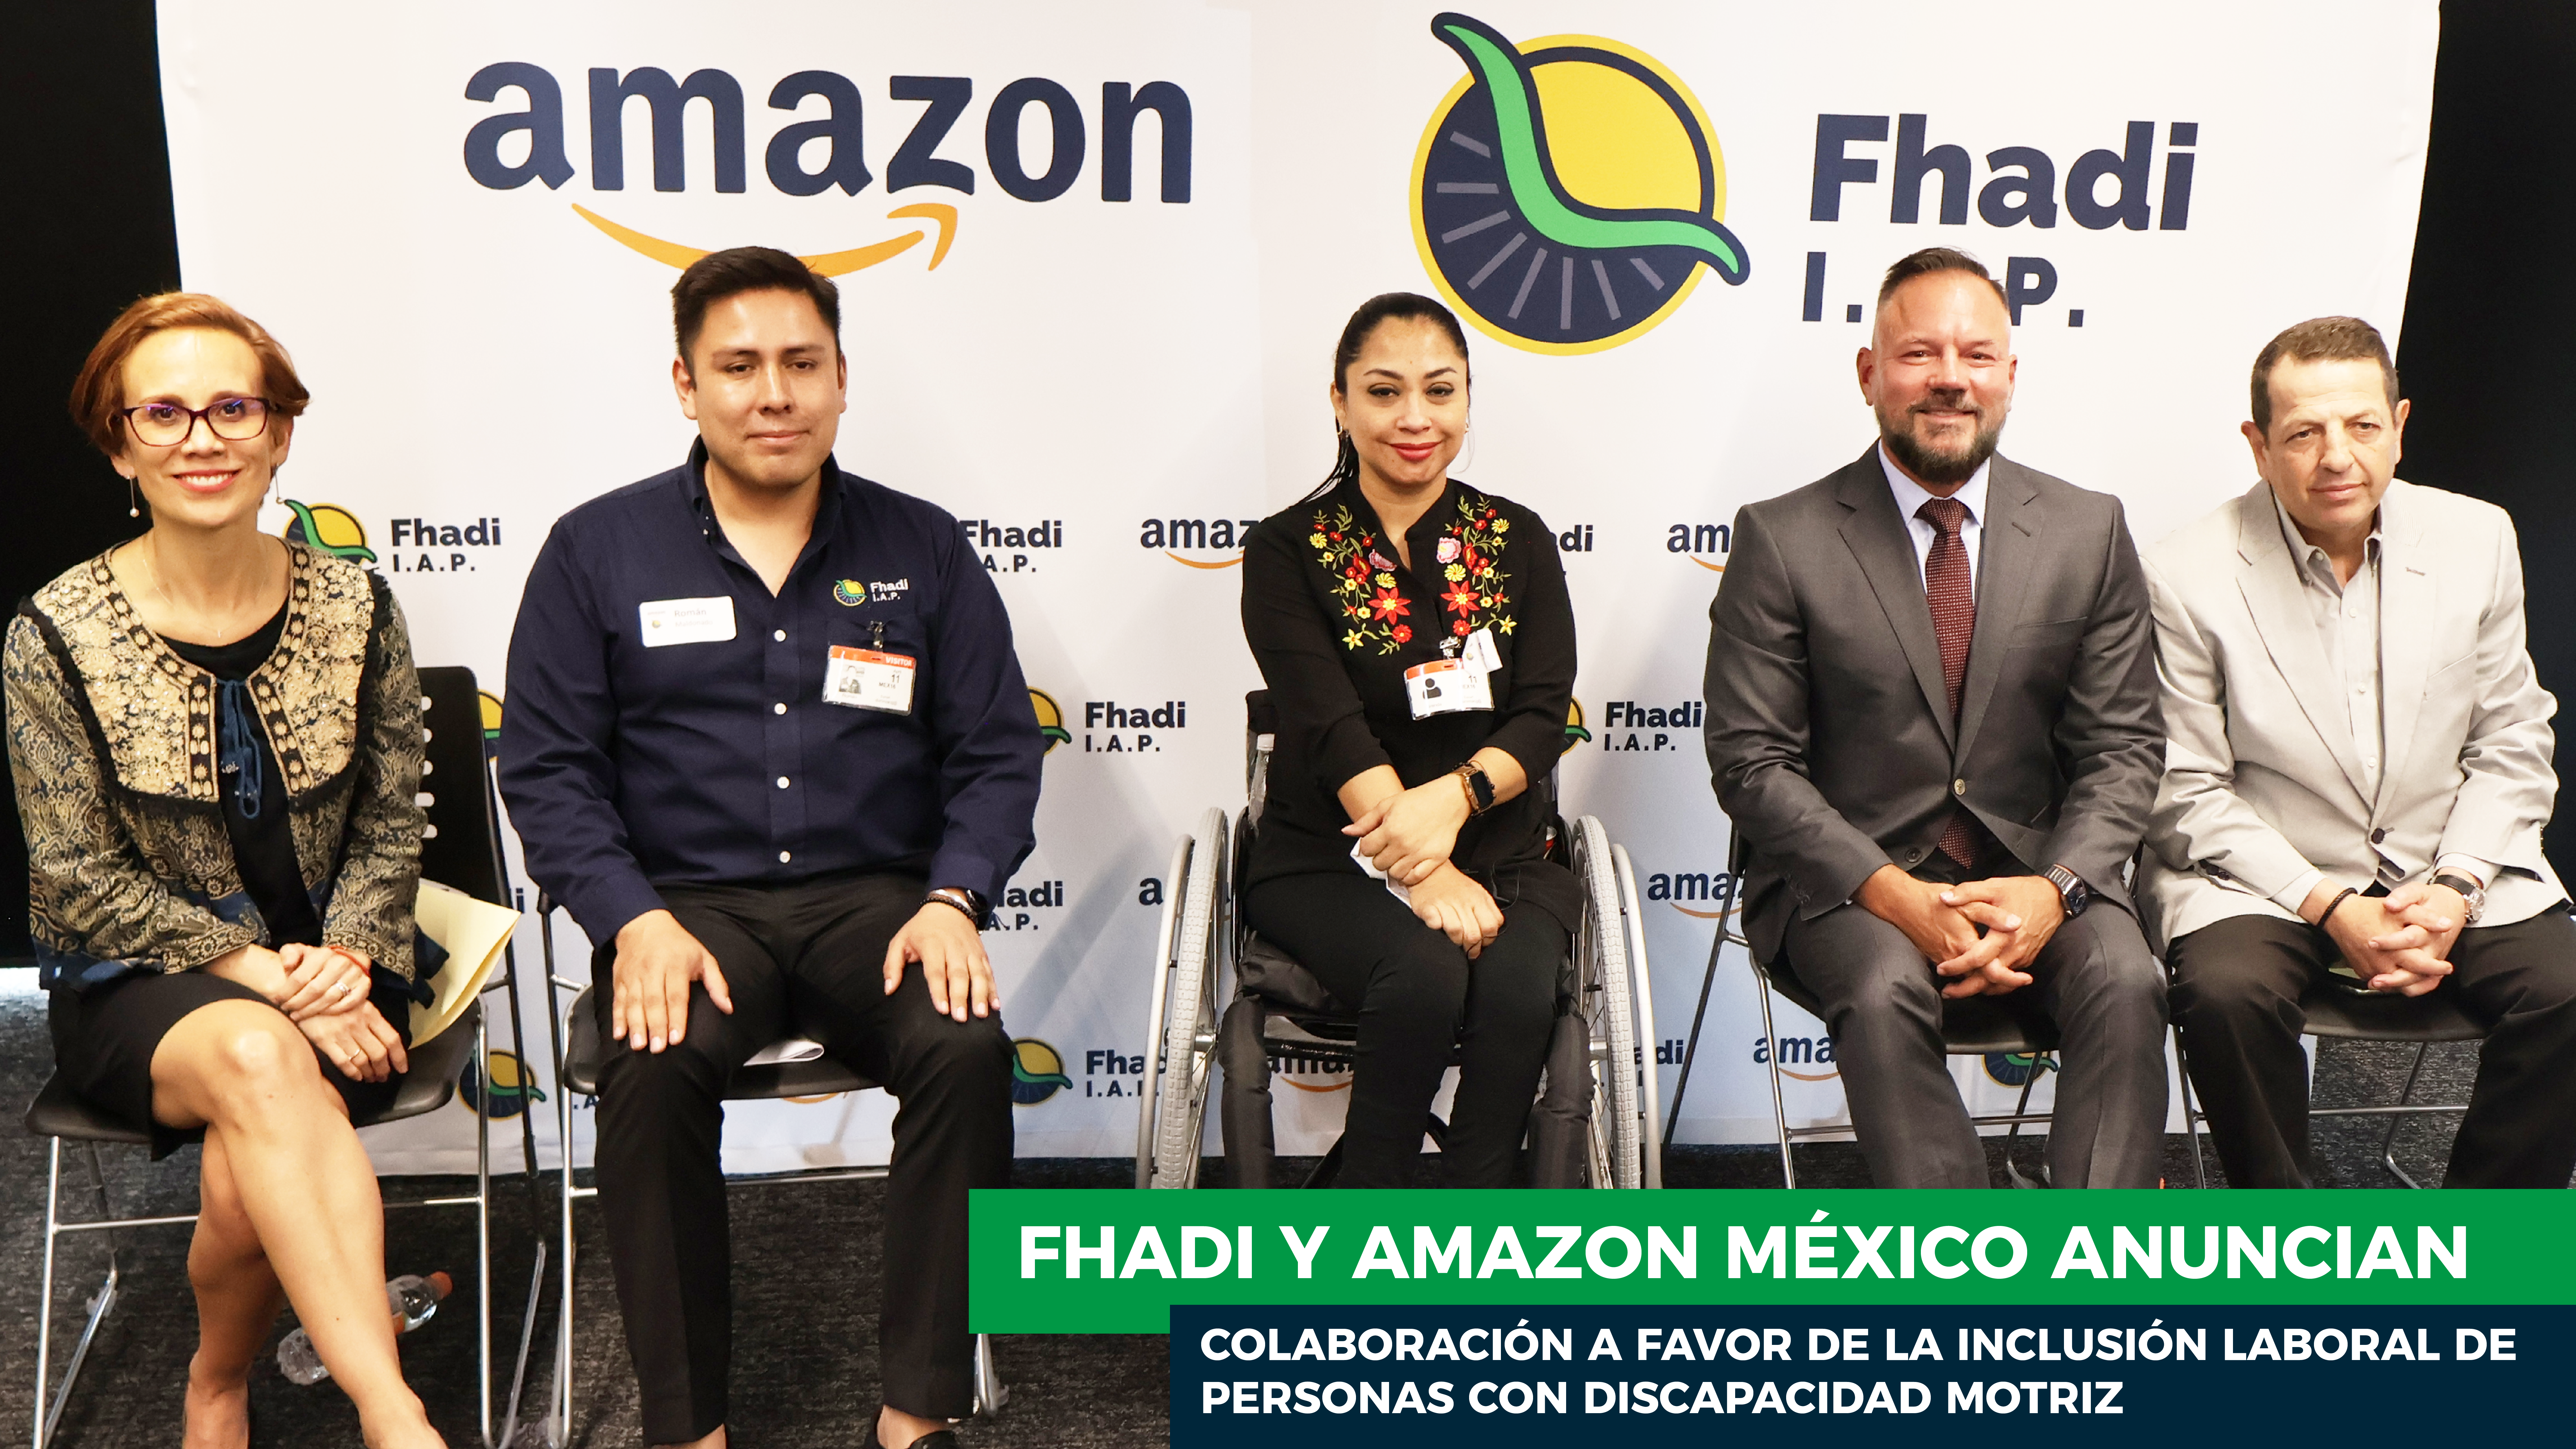 Fhadi y Amazon México anuncian colaboración para impulsar la inclusión laboral de personas con discapacidad motriz